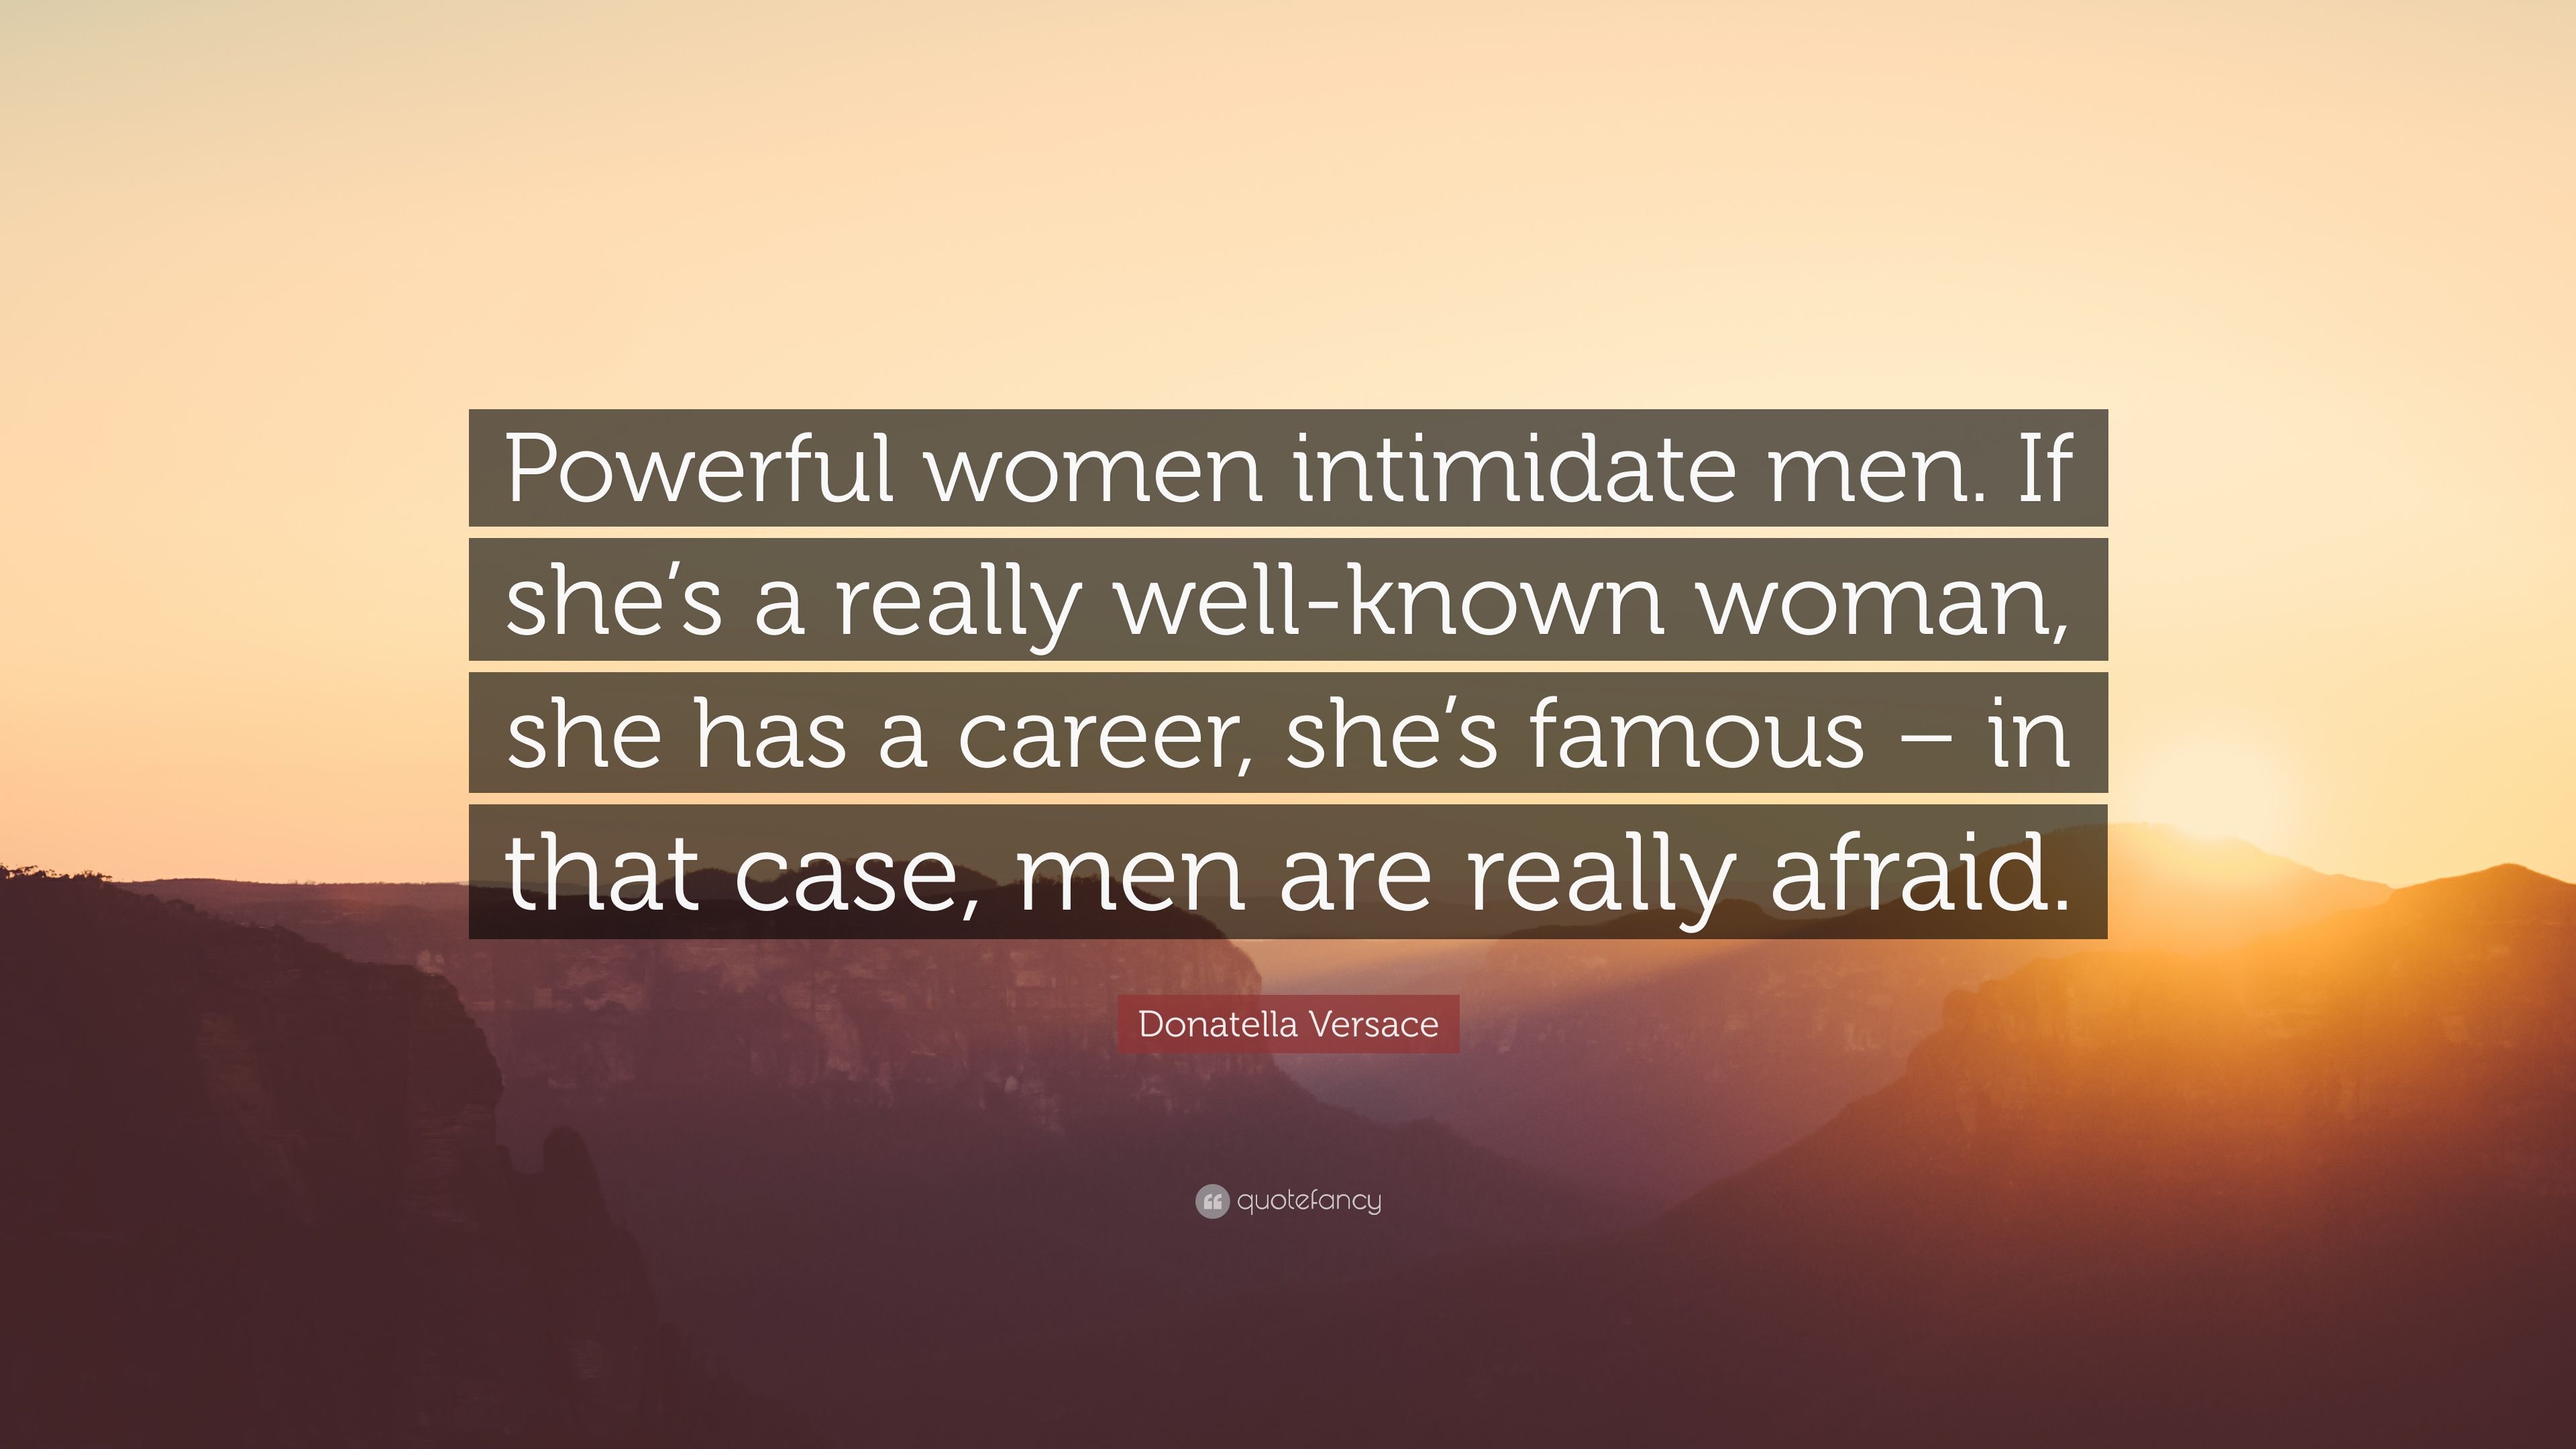 Donatella Versace Quote: “Powerful women intimidate men. If she's